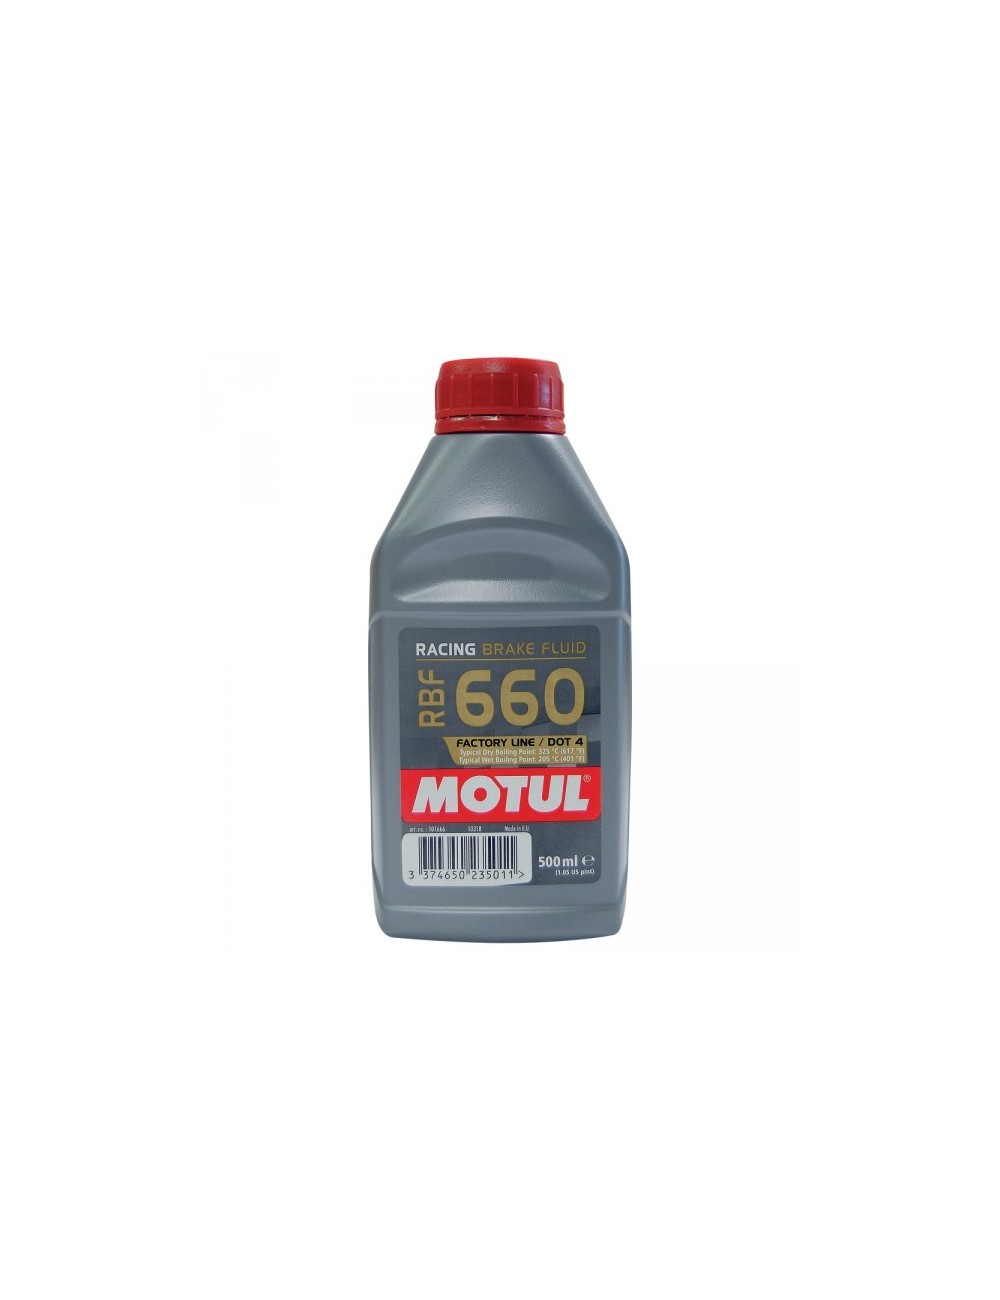 Υγρό φρένων DOT 4 Motul RBF 660 1/2 W 325 ° C